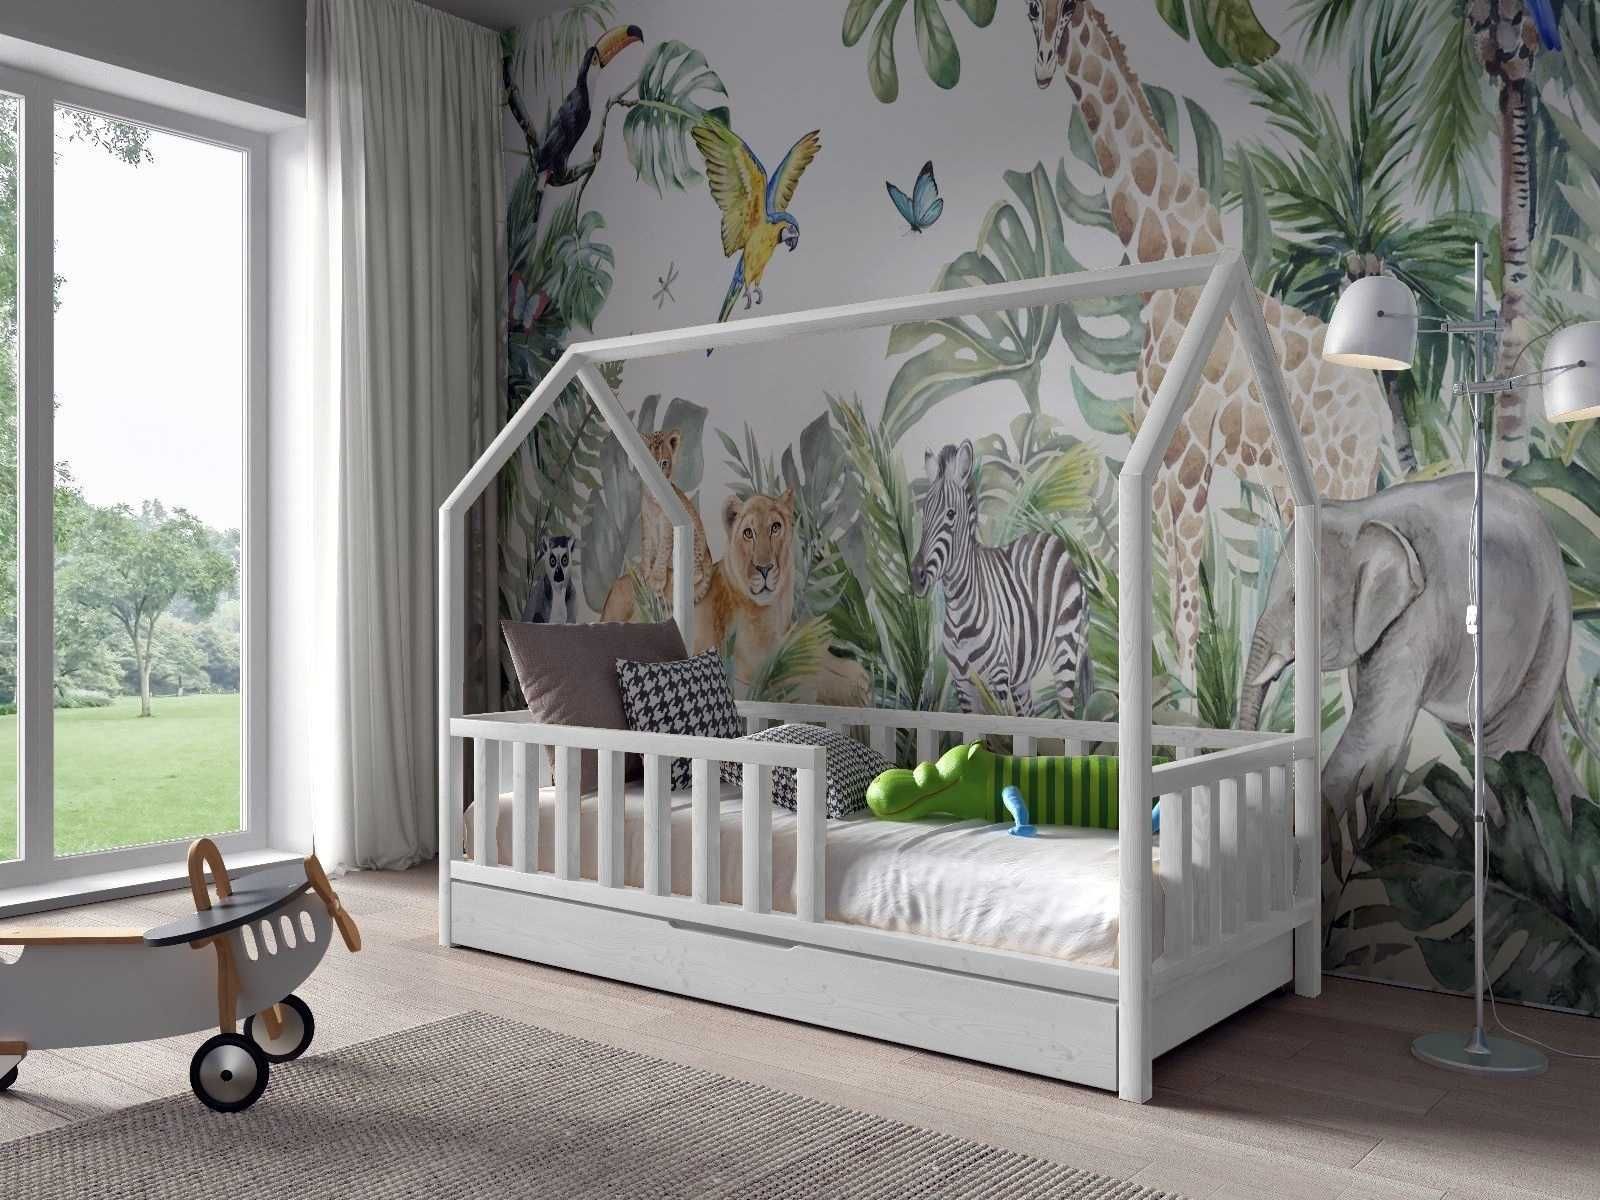 Łóżko dla dziecka domek ANTOŚ 160x80 materac gratis